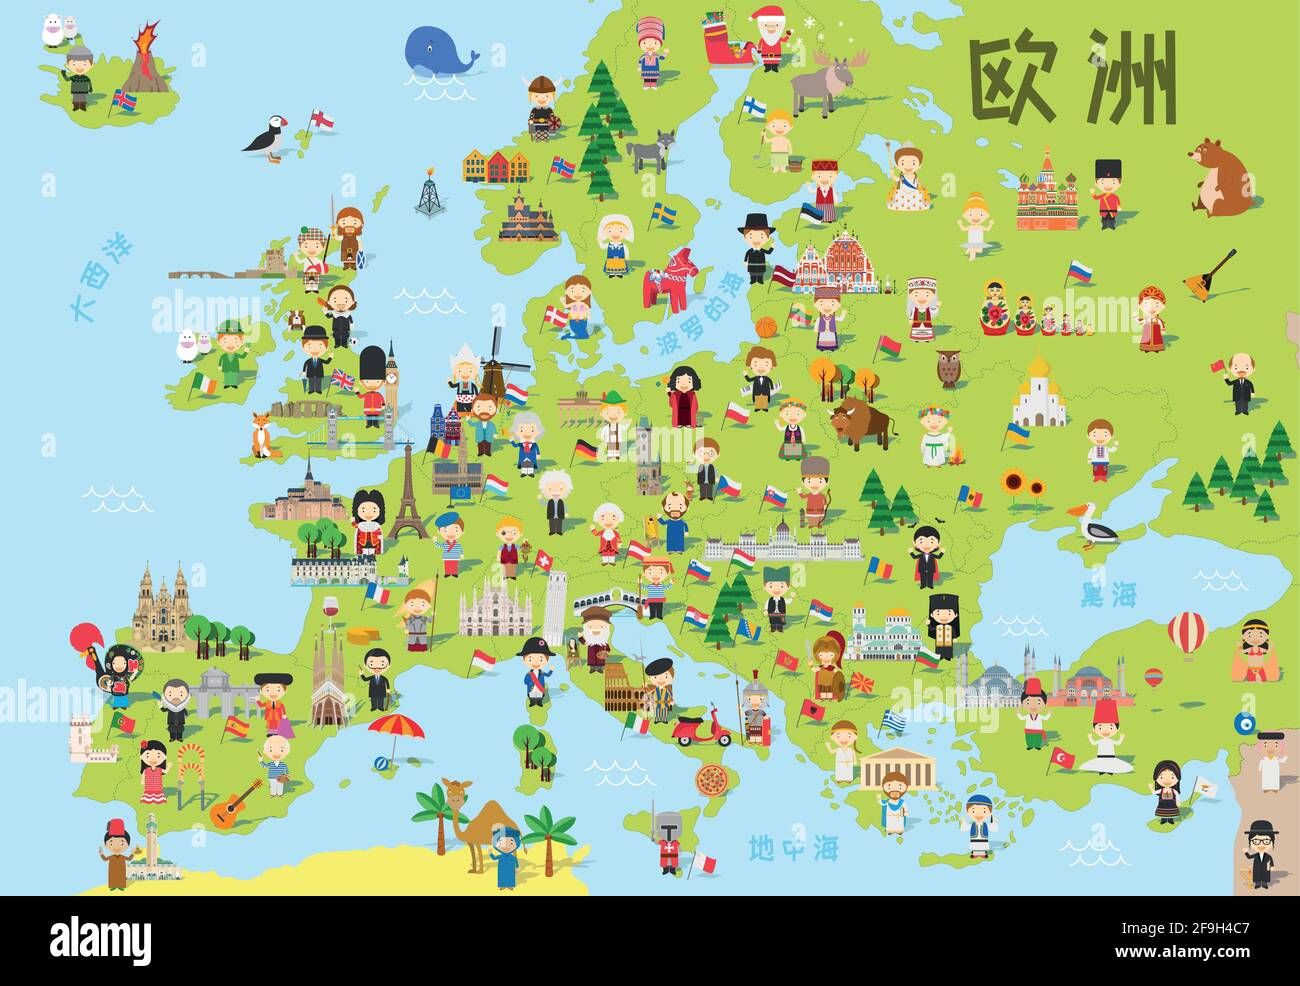 Divertente cartoni animati dell'Europa in cinese con bambini di diverse nazionalità, monumenti rappresentativi, animali e oggetti di tutti i paesi. Illustrazione Vettoriale